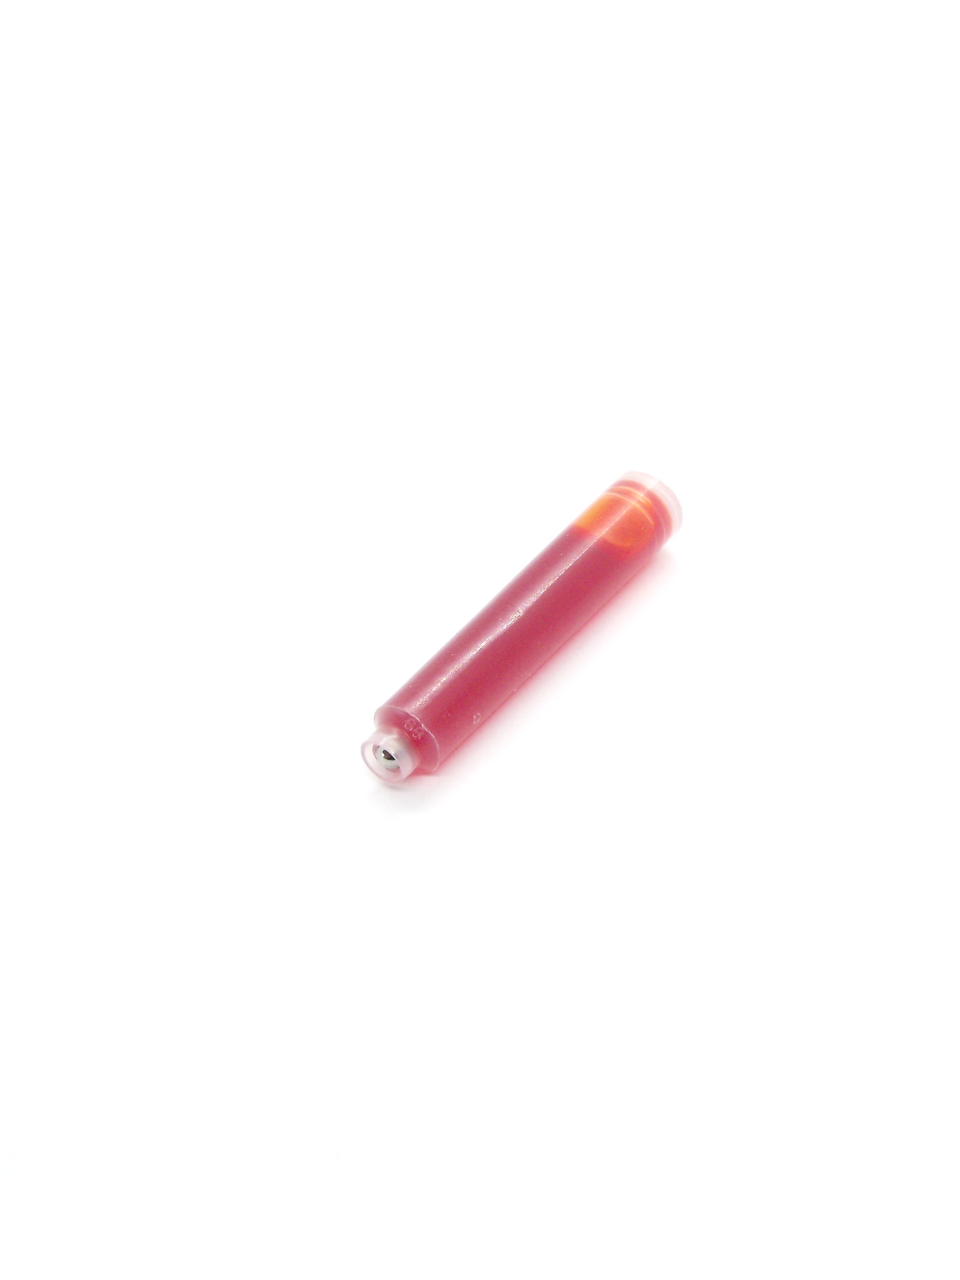 Cartridges For Stypen Fountain Pens (Orange)